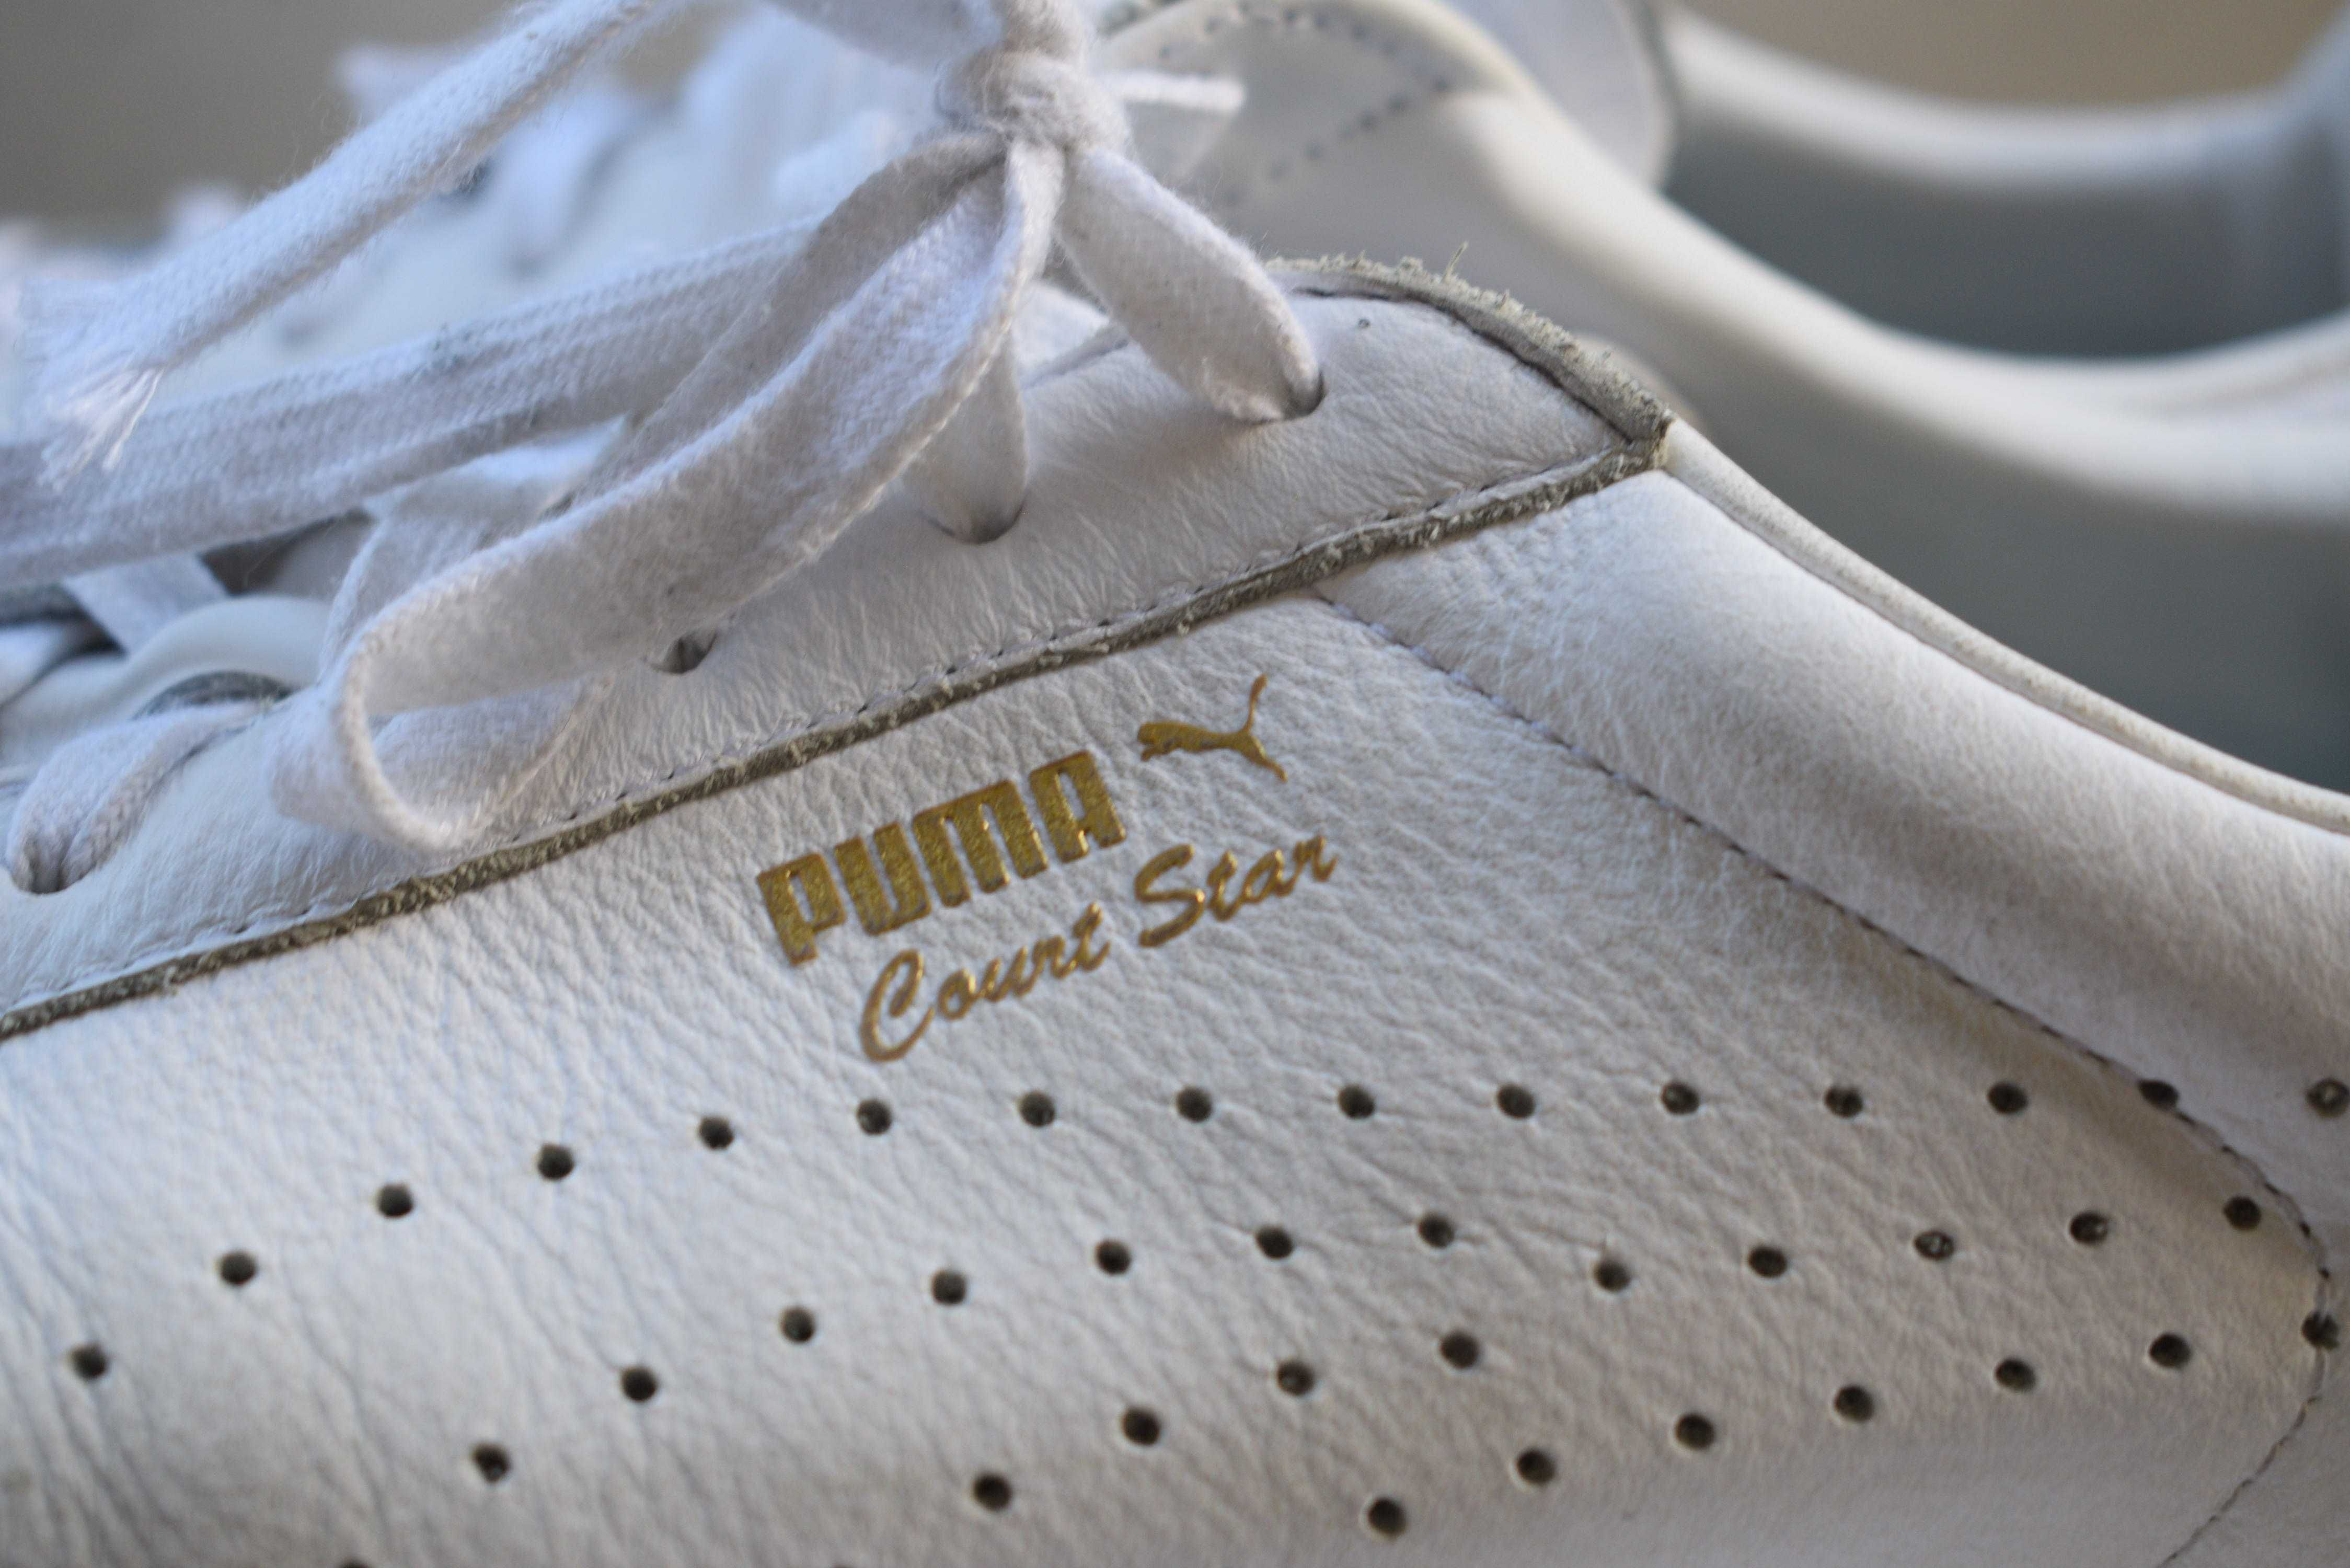 кожаные кроссовки кросовки кеды сникеры Puma Court Star р. 46 30 см